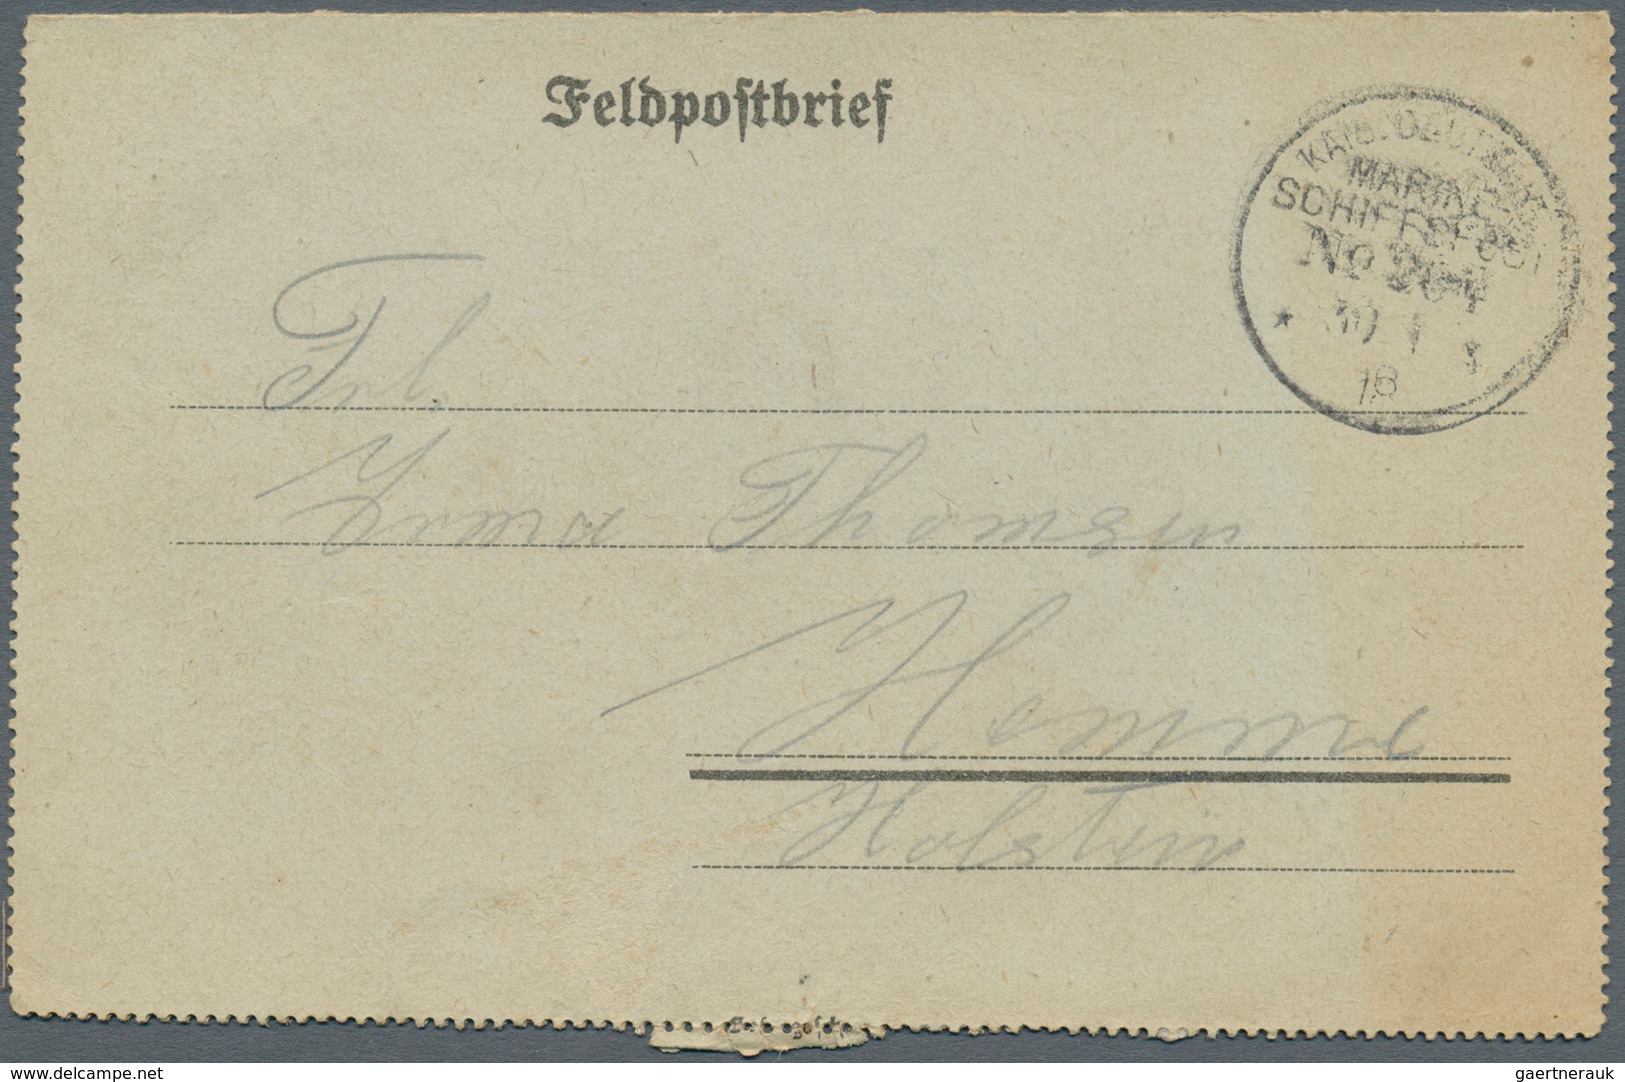 Deutsche Schiffspost - Marine: 1890/1918, Partie von ca. 90 Belegen aus den verschiedensten Regionen